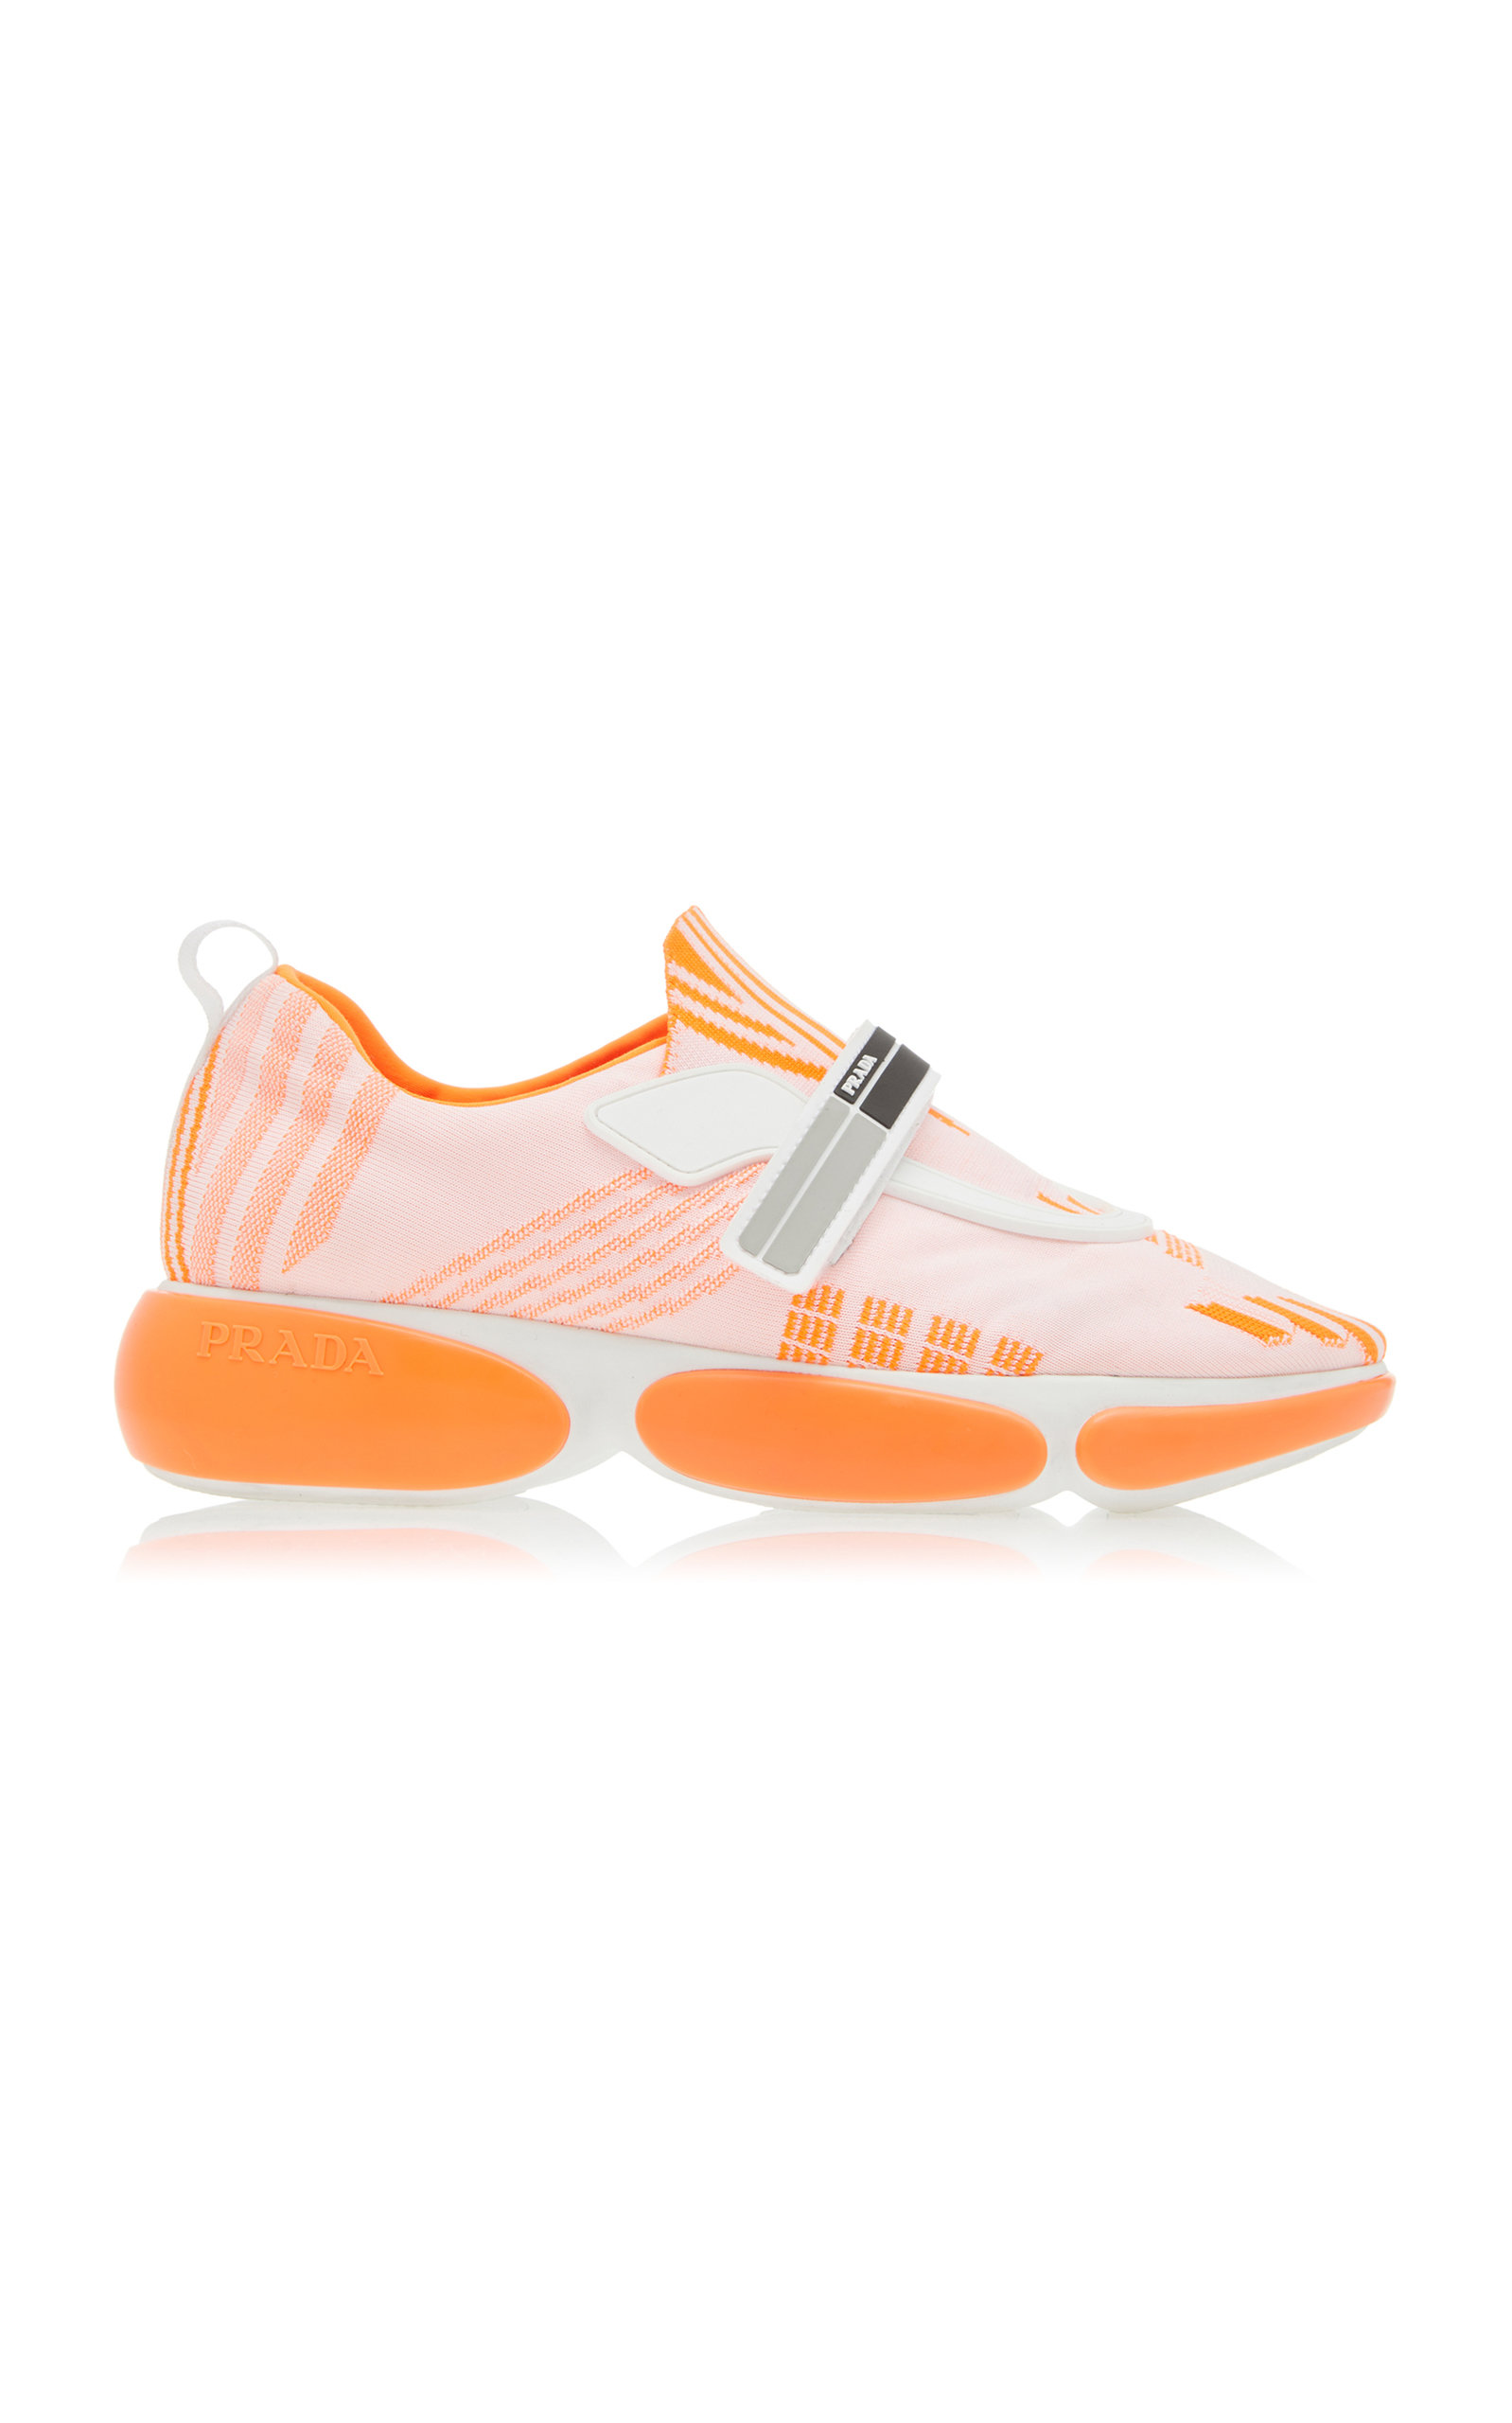 Prada - Women's Allacciate Sneakers   - Orange - IT 36 - Moda Operandi